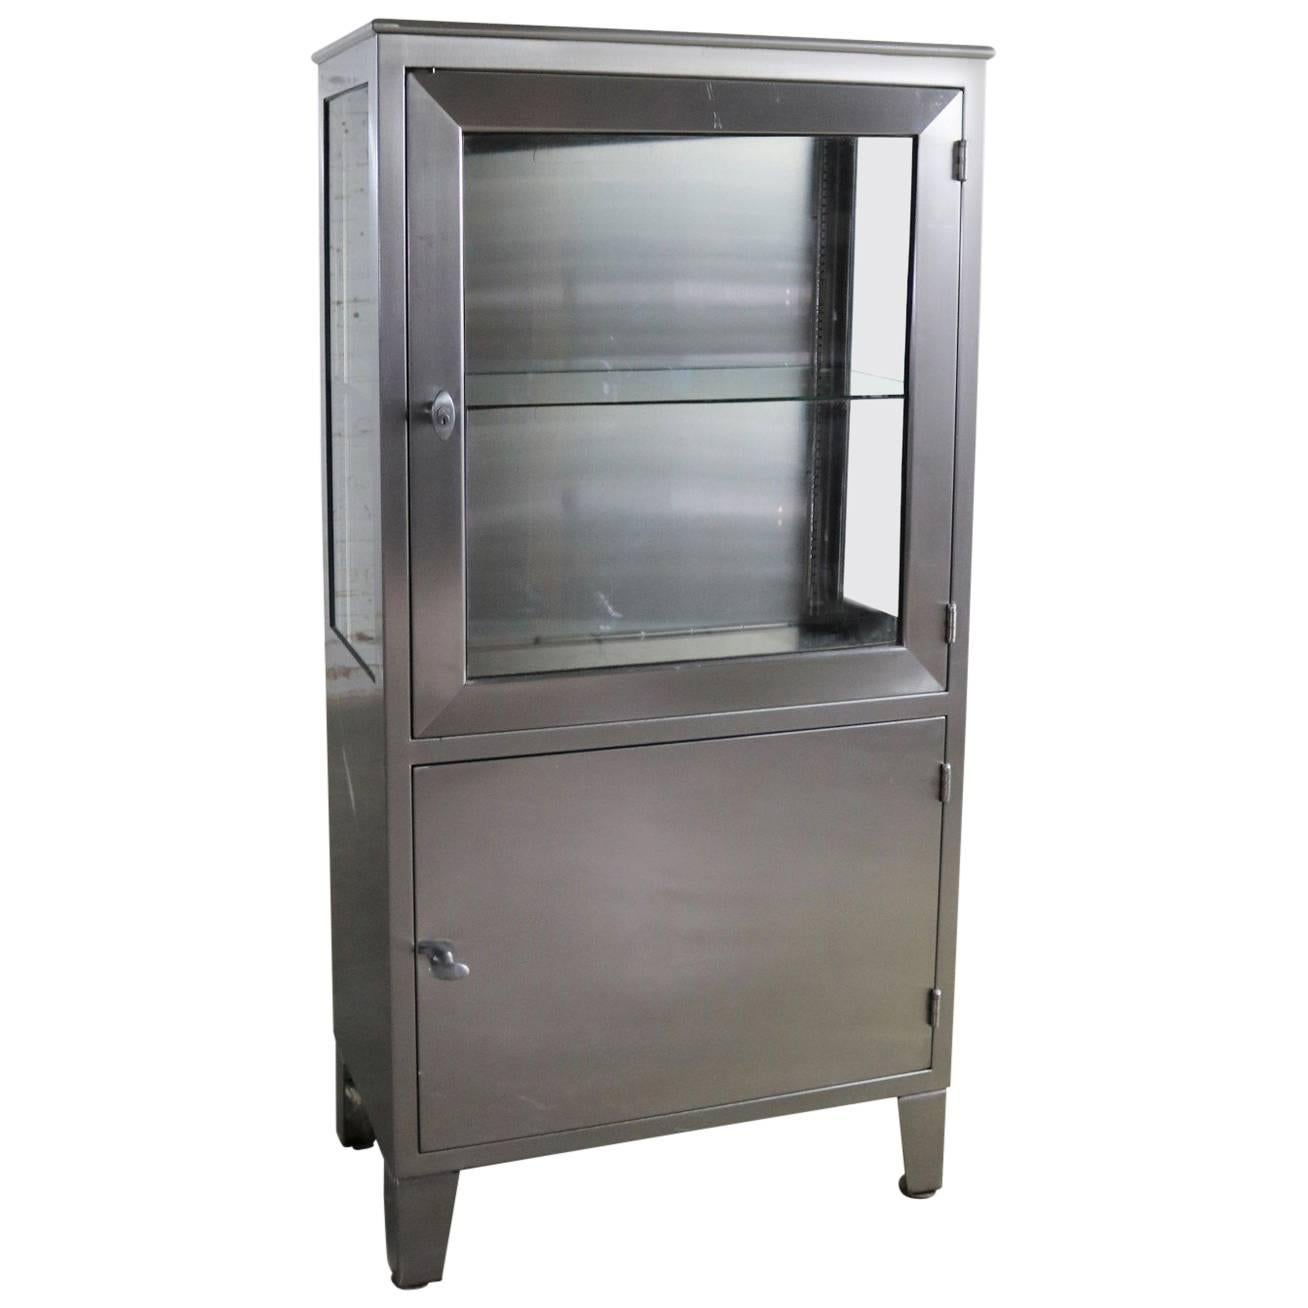 Vintage Petite Stainless Steel Industrial or Medical Display Storage Cabinet